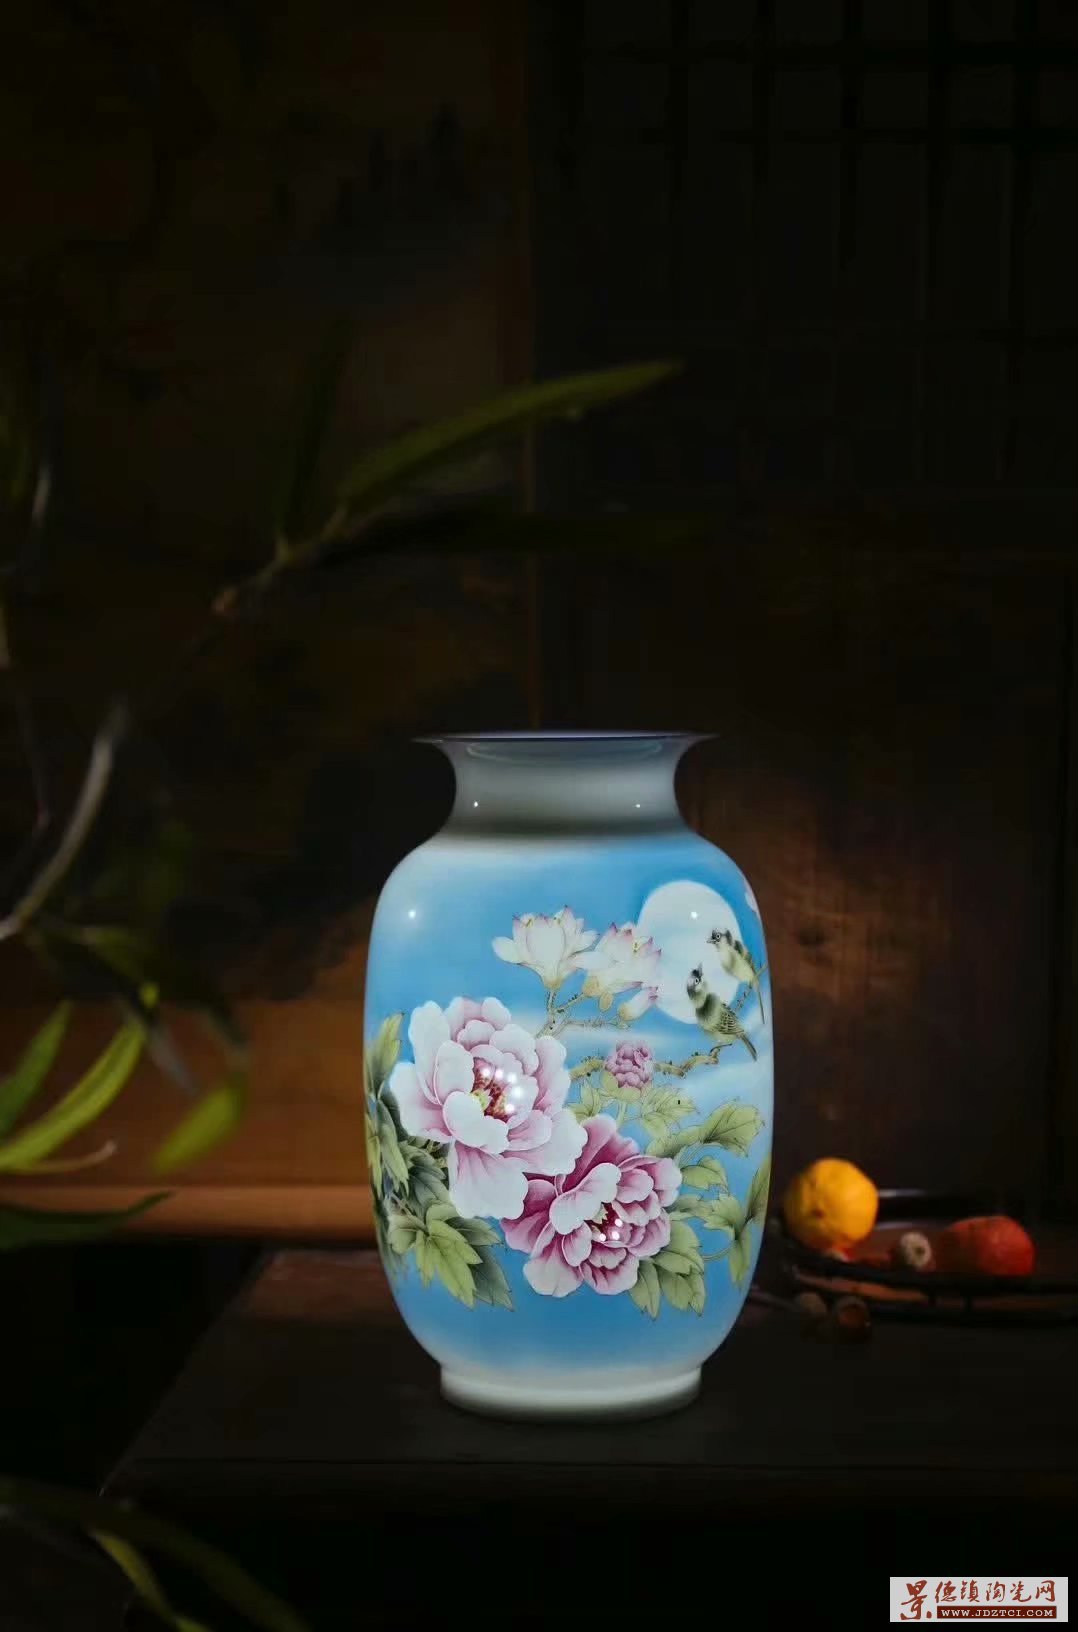 景德镇手绘名人名作瓷瓶，高峰半刀泥雕刻花瓶摆件，家居摆件瓷器收藏品